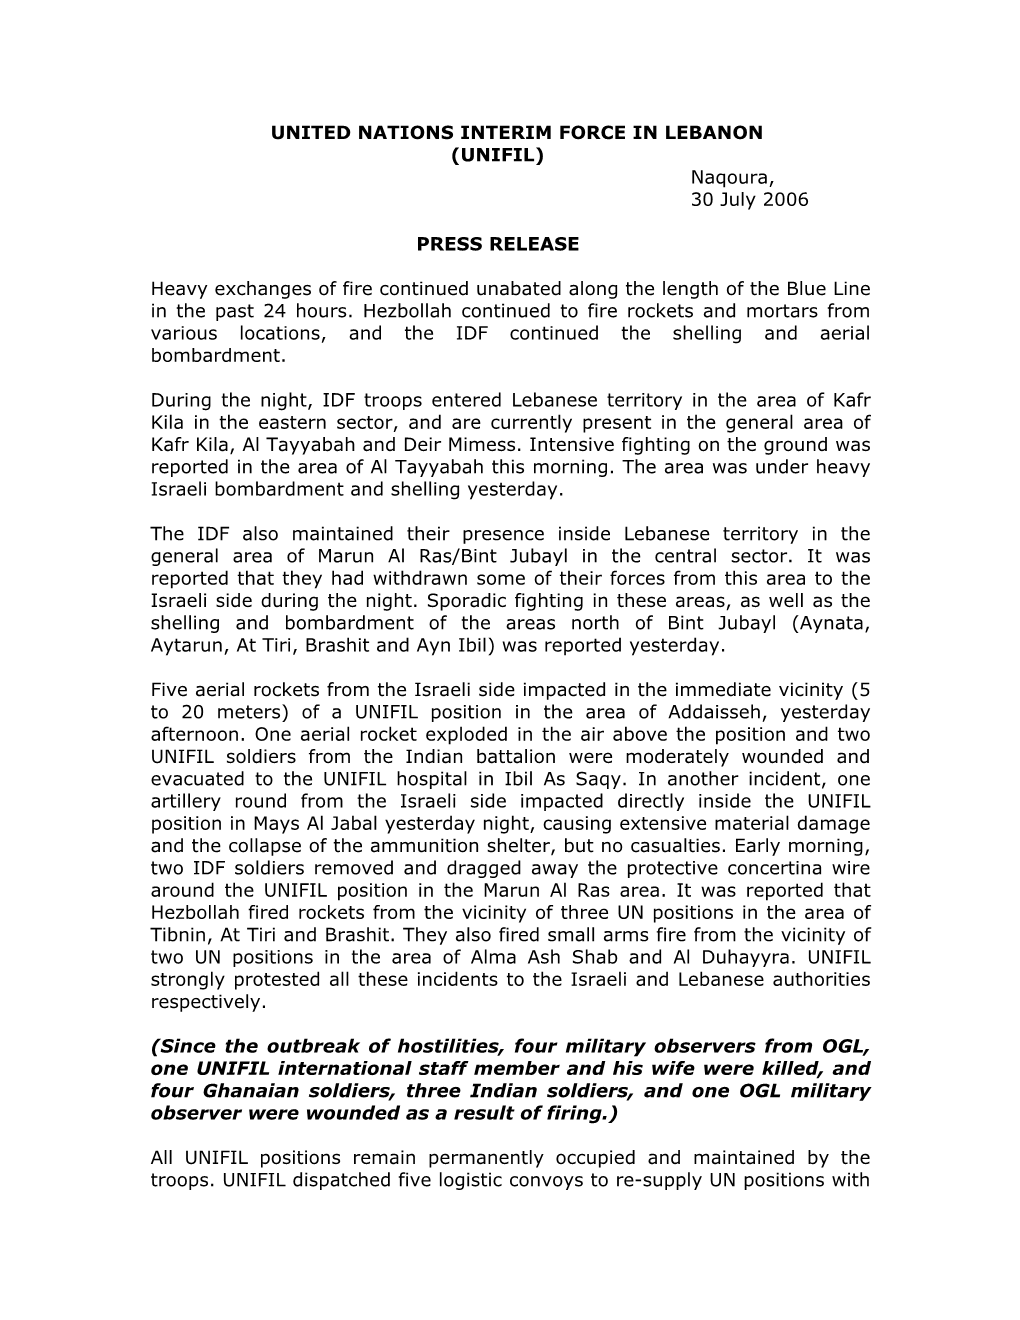 Press Release 30 July 2006